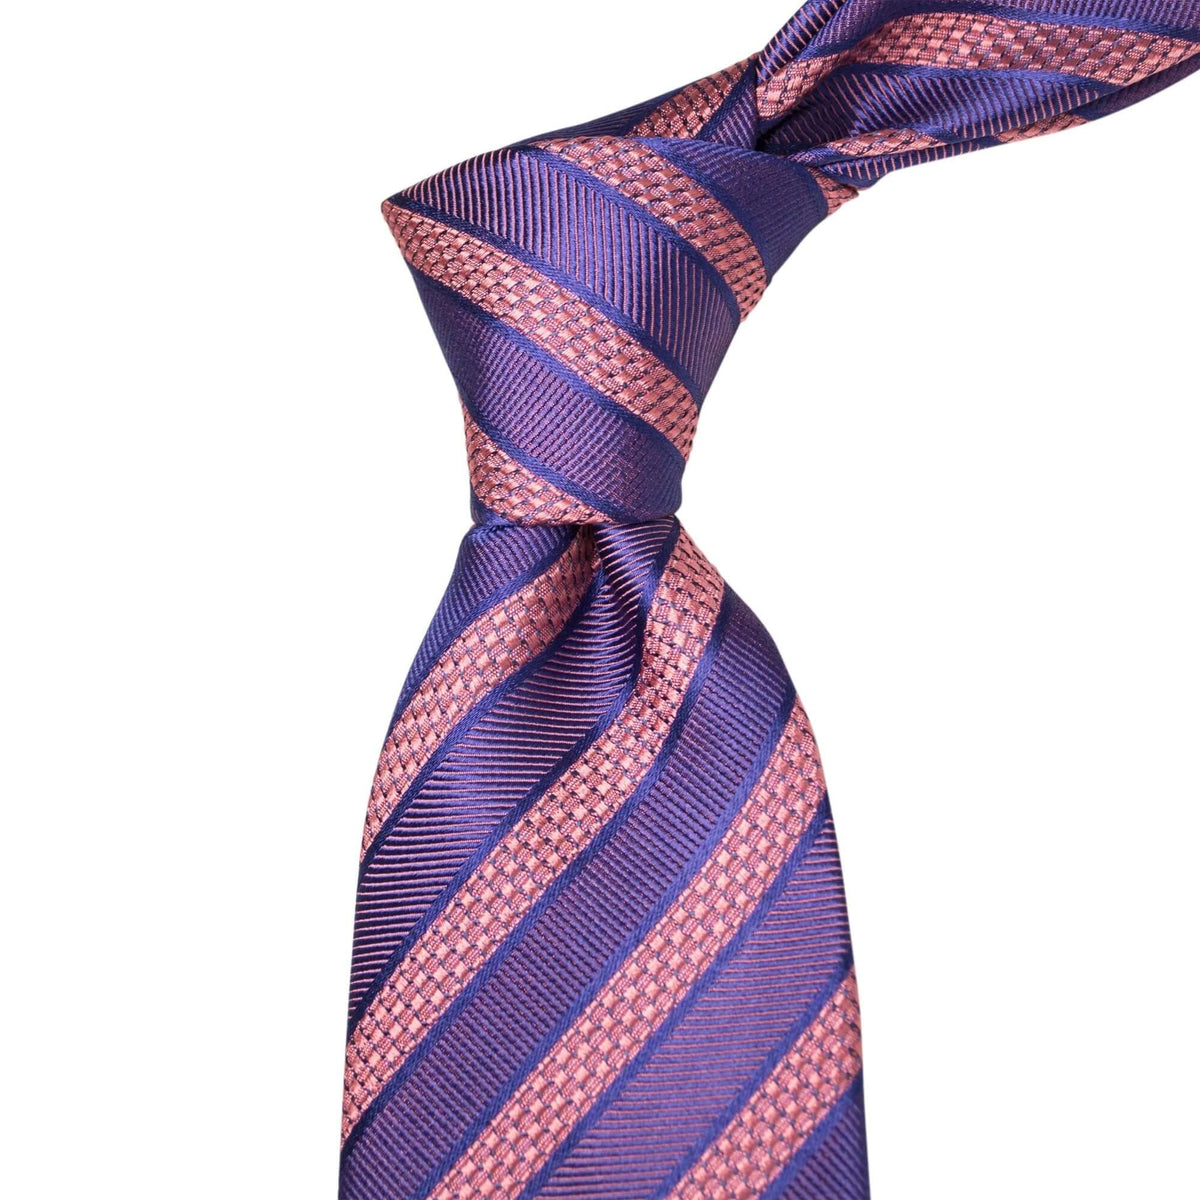 8cm Woven Pink with Indigo Striped Necktie-Cufflinks.com.sg | Neckties.com.sg